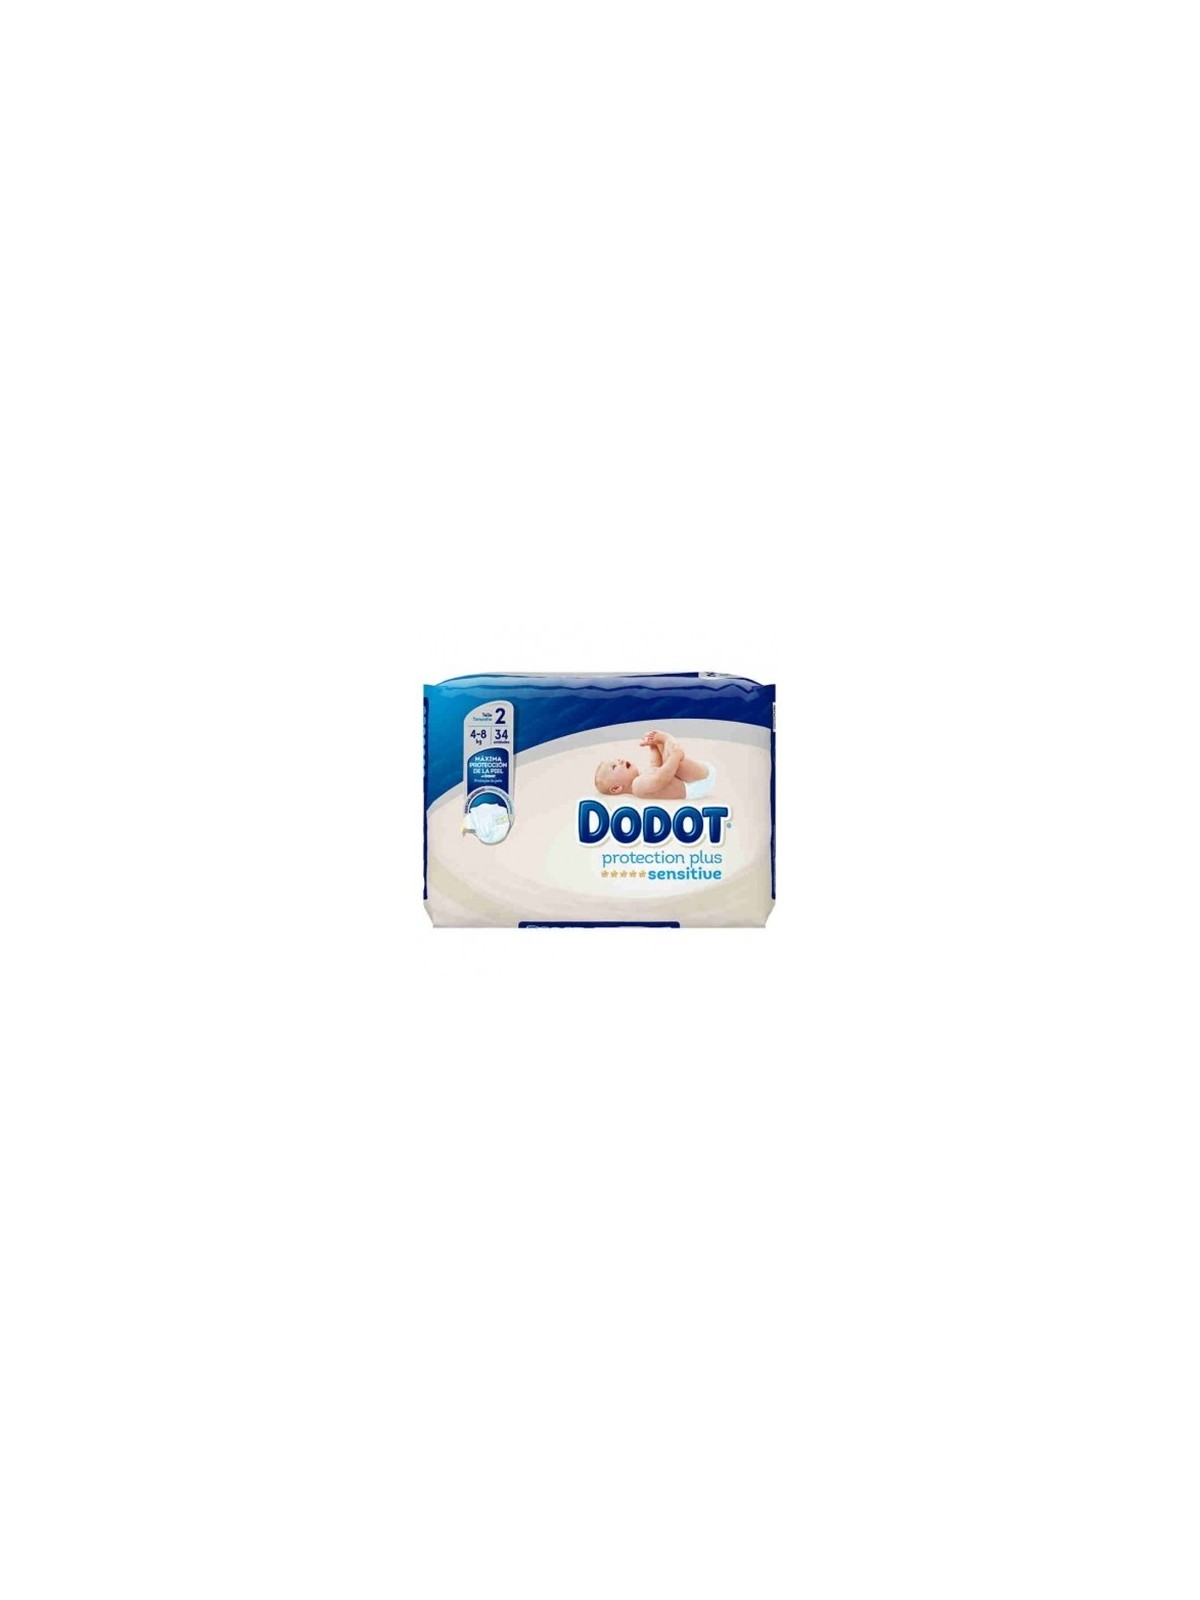 Dodot® Pro-Sensitive+ Pañales Talla 2, 36 unidades